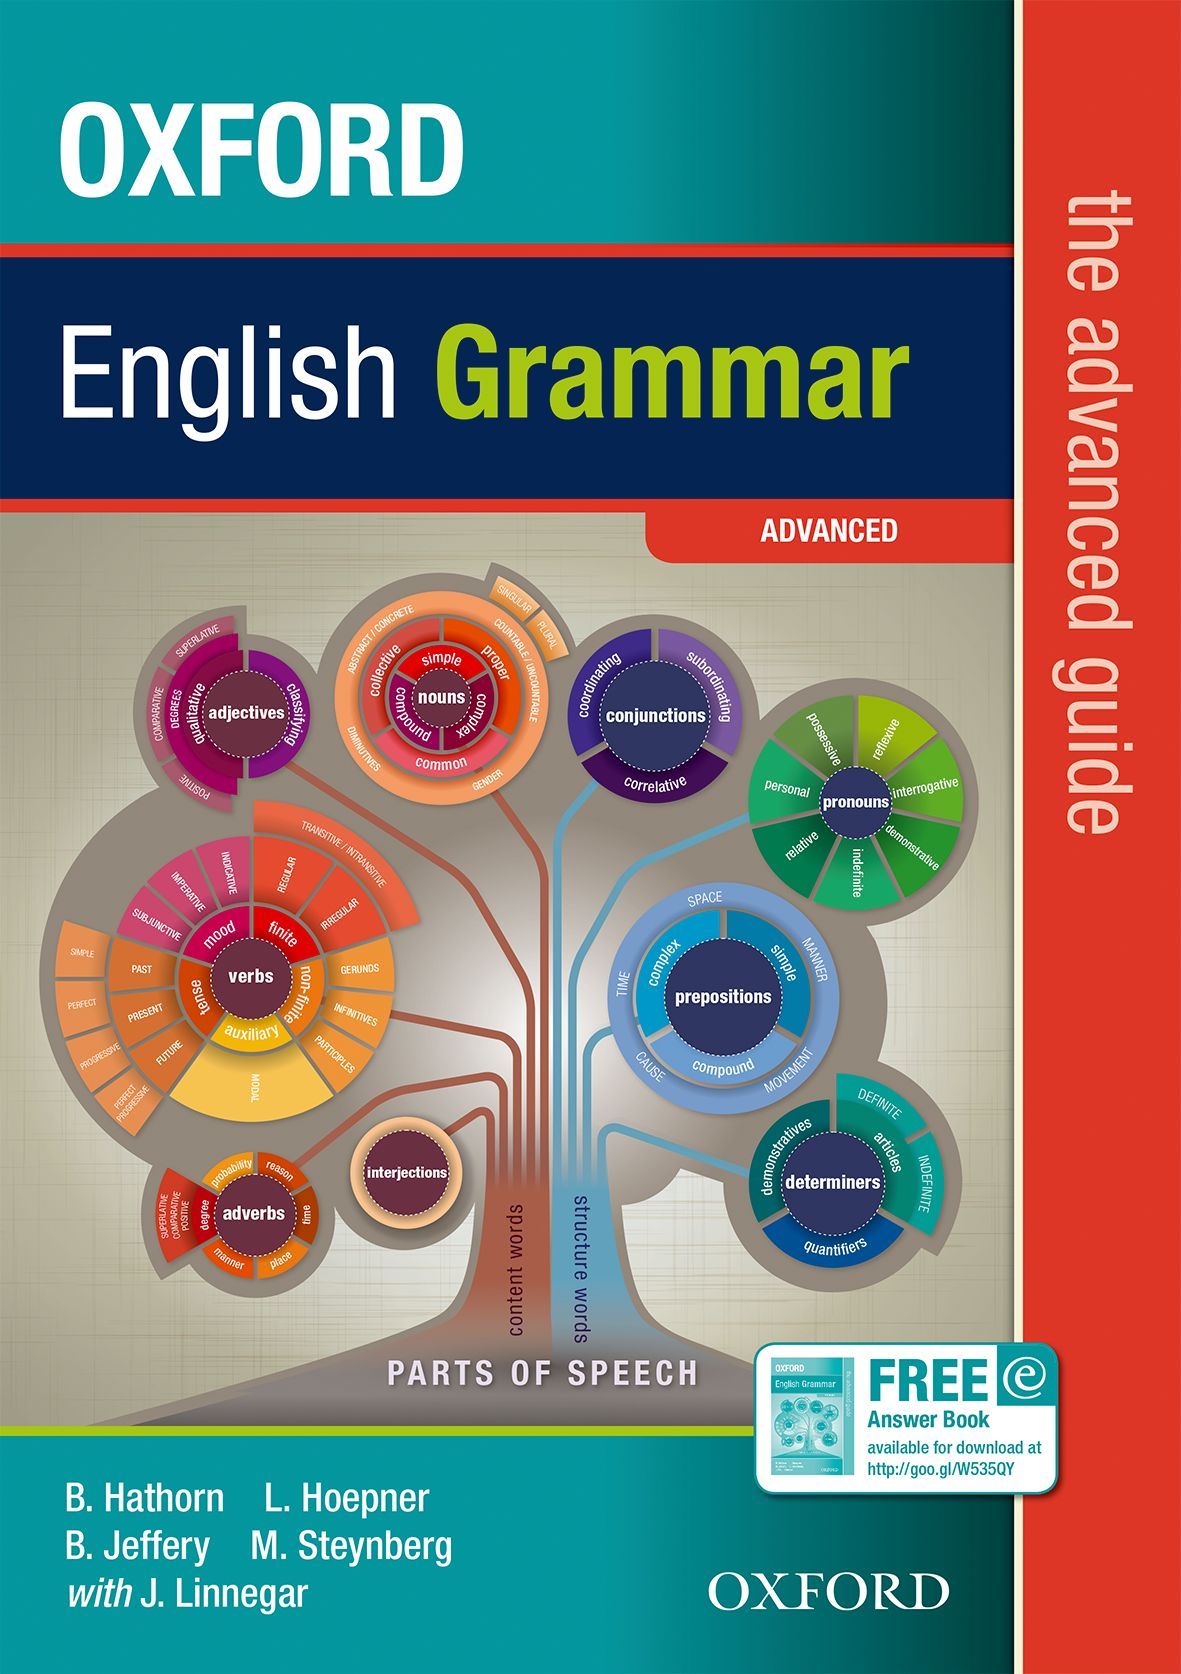 Oxford English Grammar Course Pdf - cleverohio